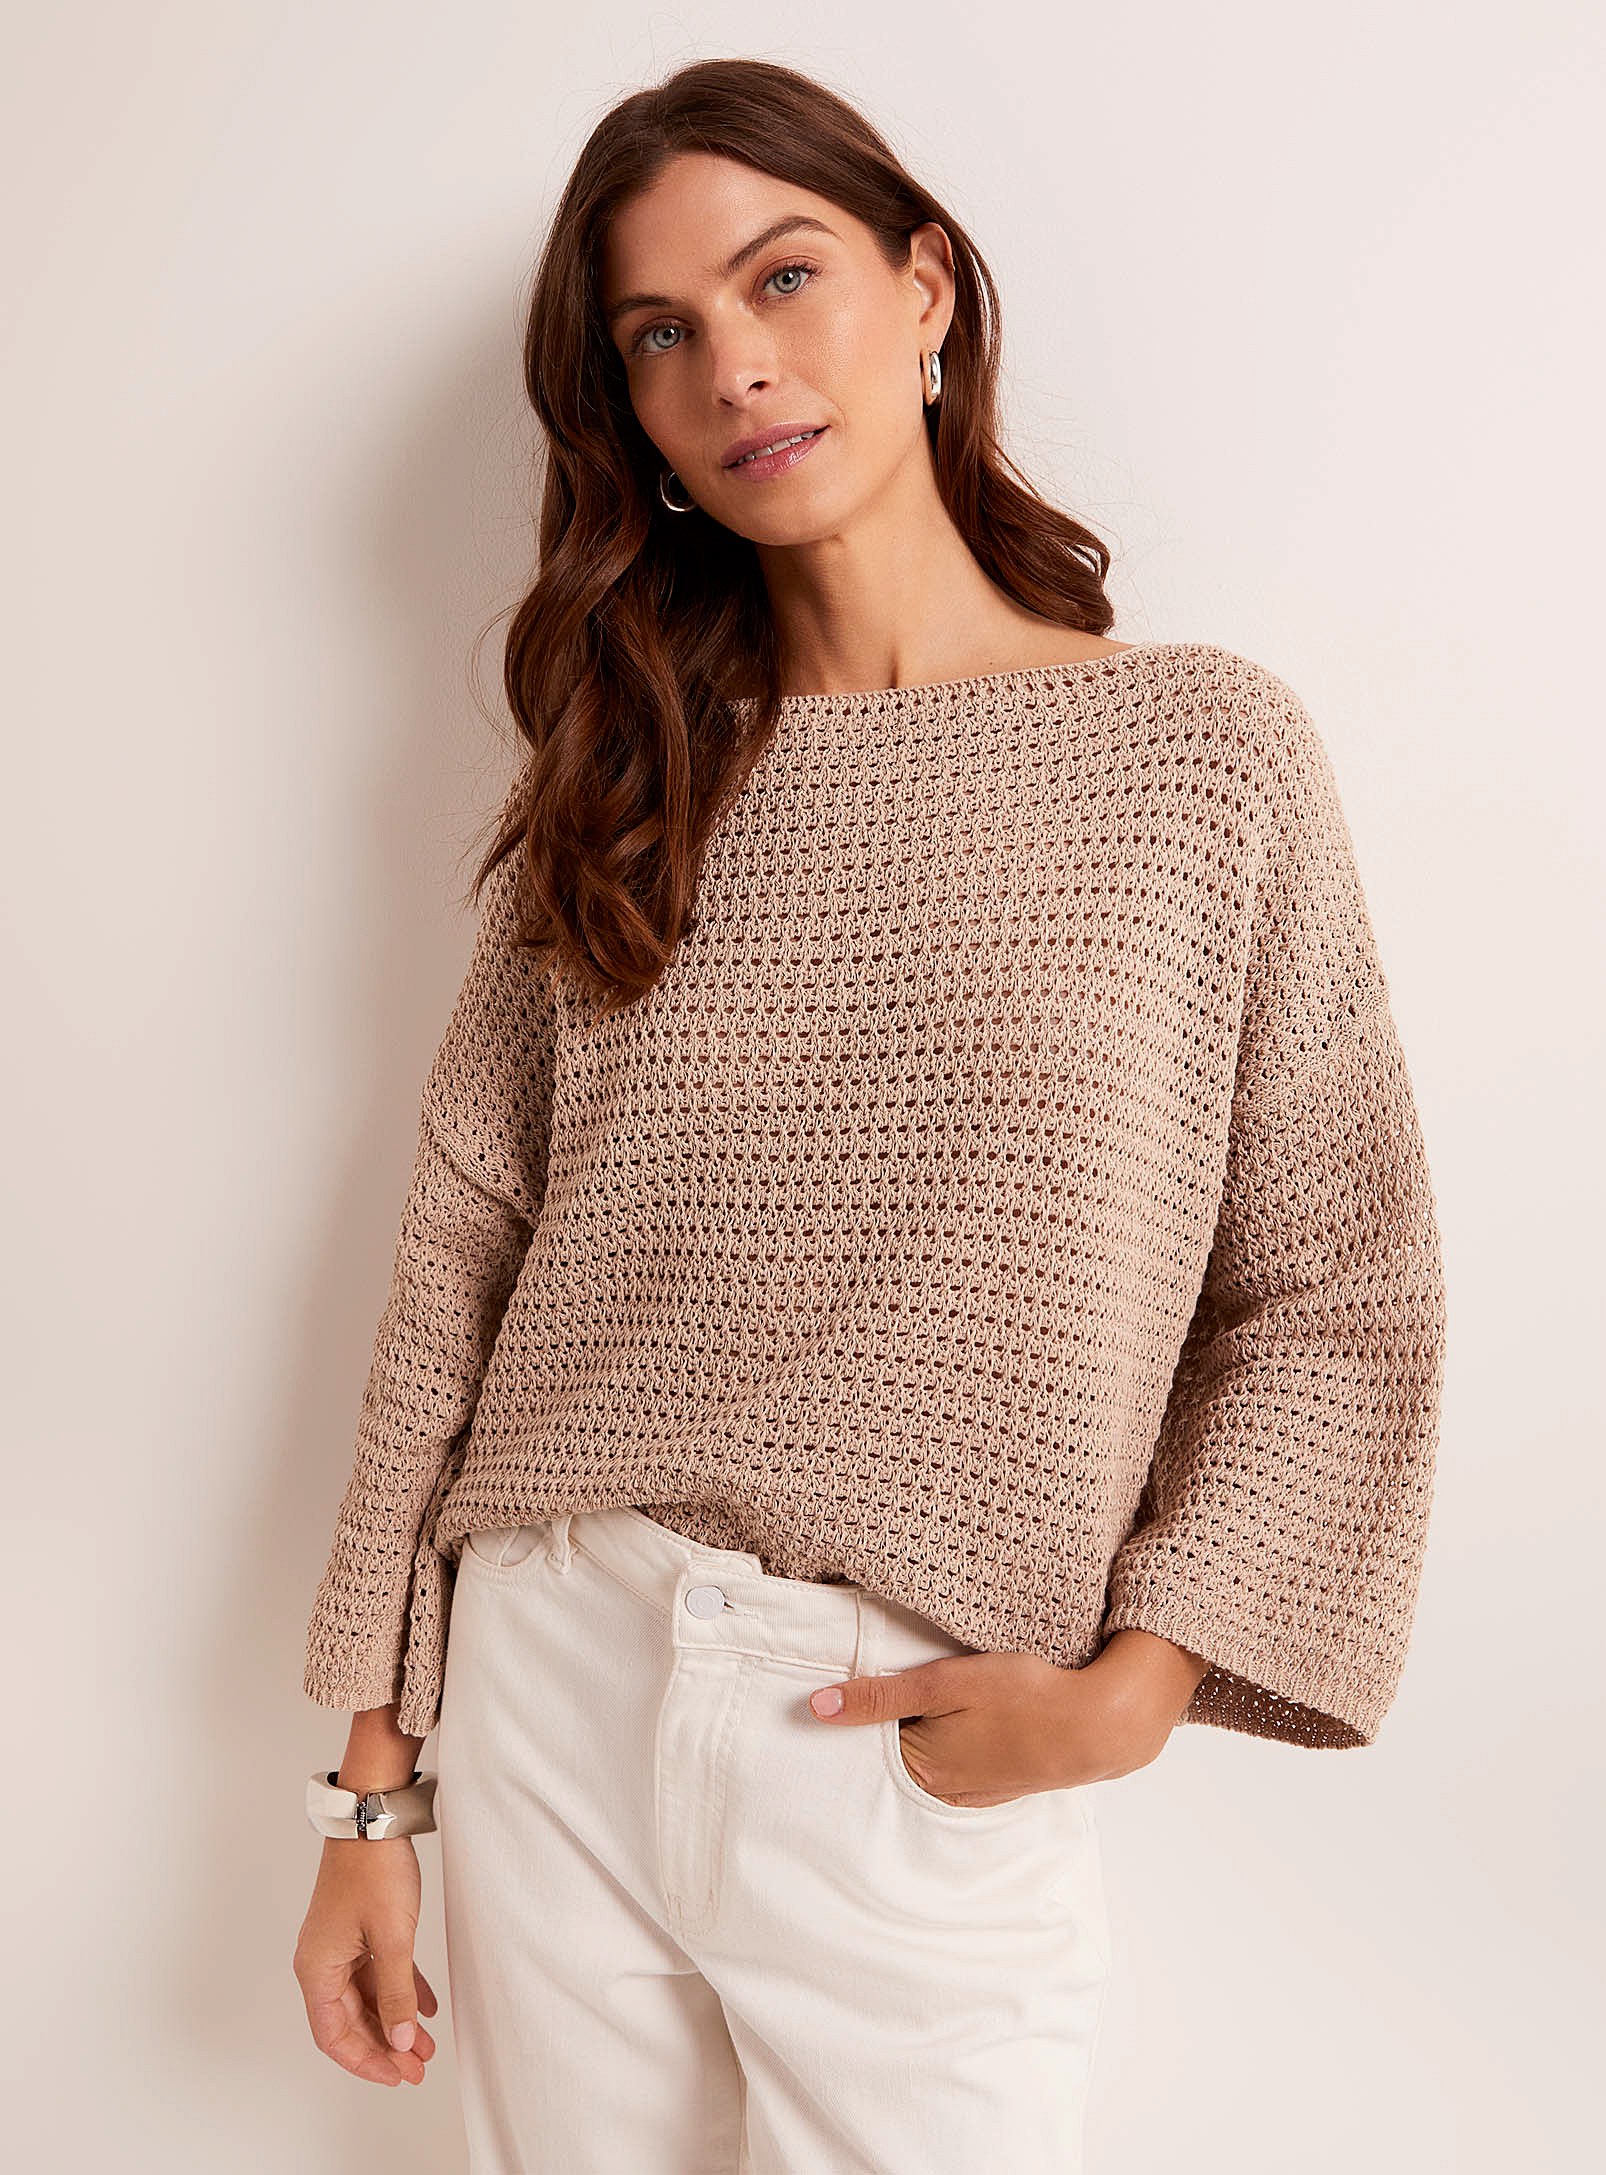 Contemporaine Openwork Crochet Loose Sweater In Brown